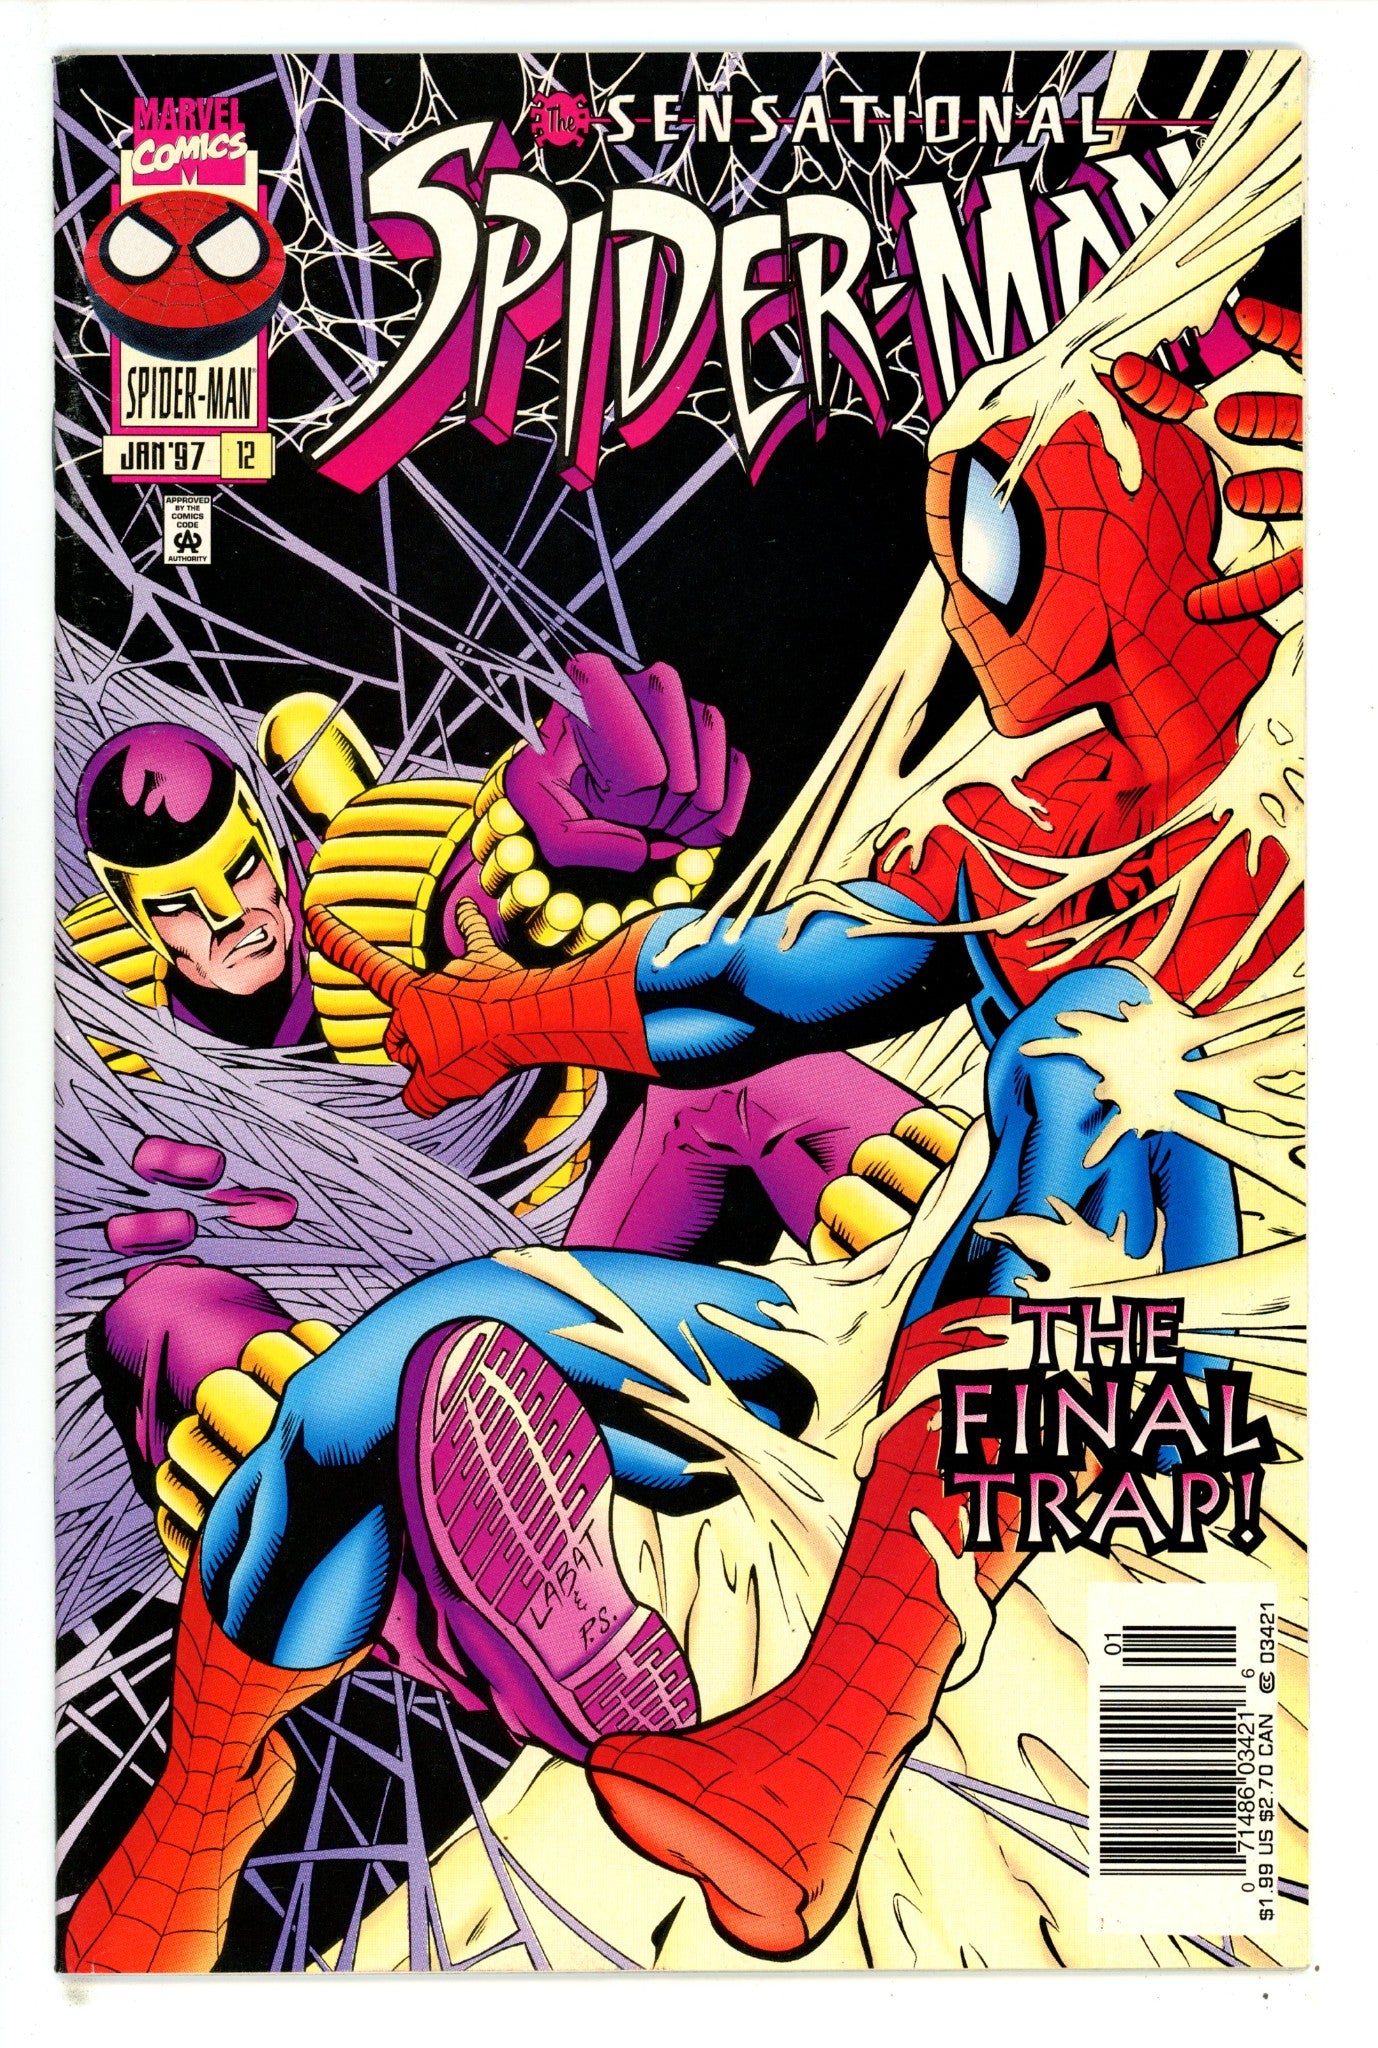 The Sensational Spider-Man Vol 1 12 High Grade (1997) Newsstand 